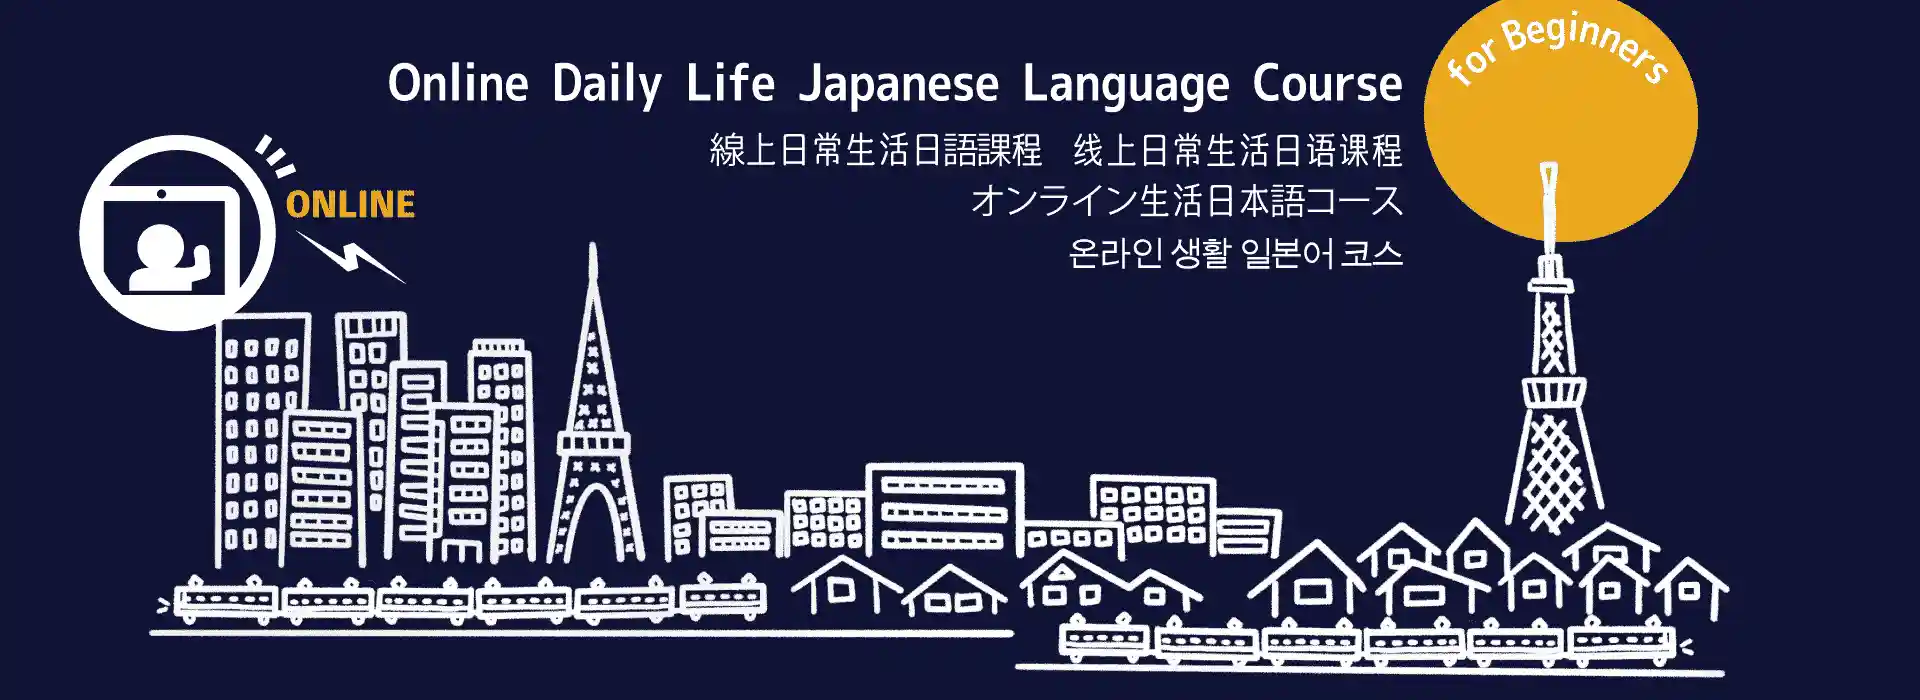 オンライン生活日本語コース